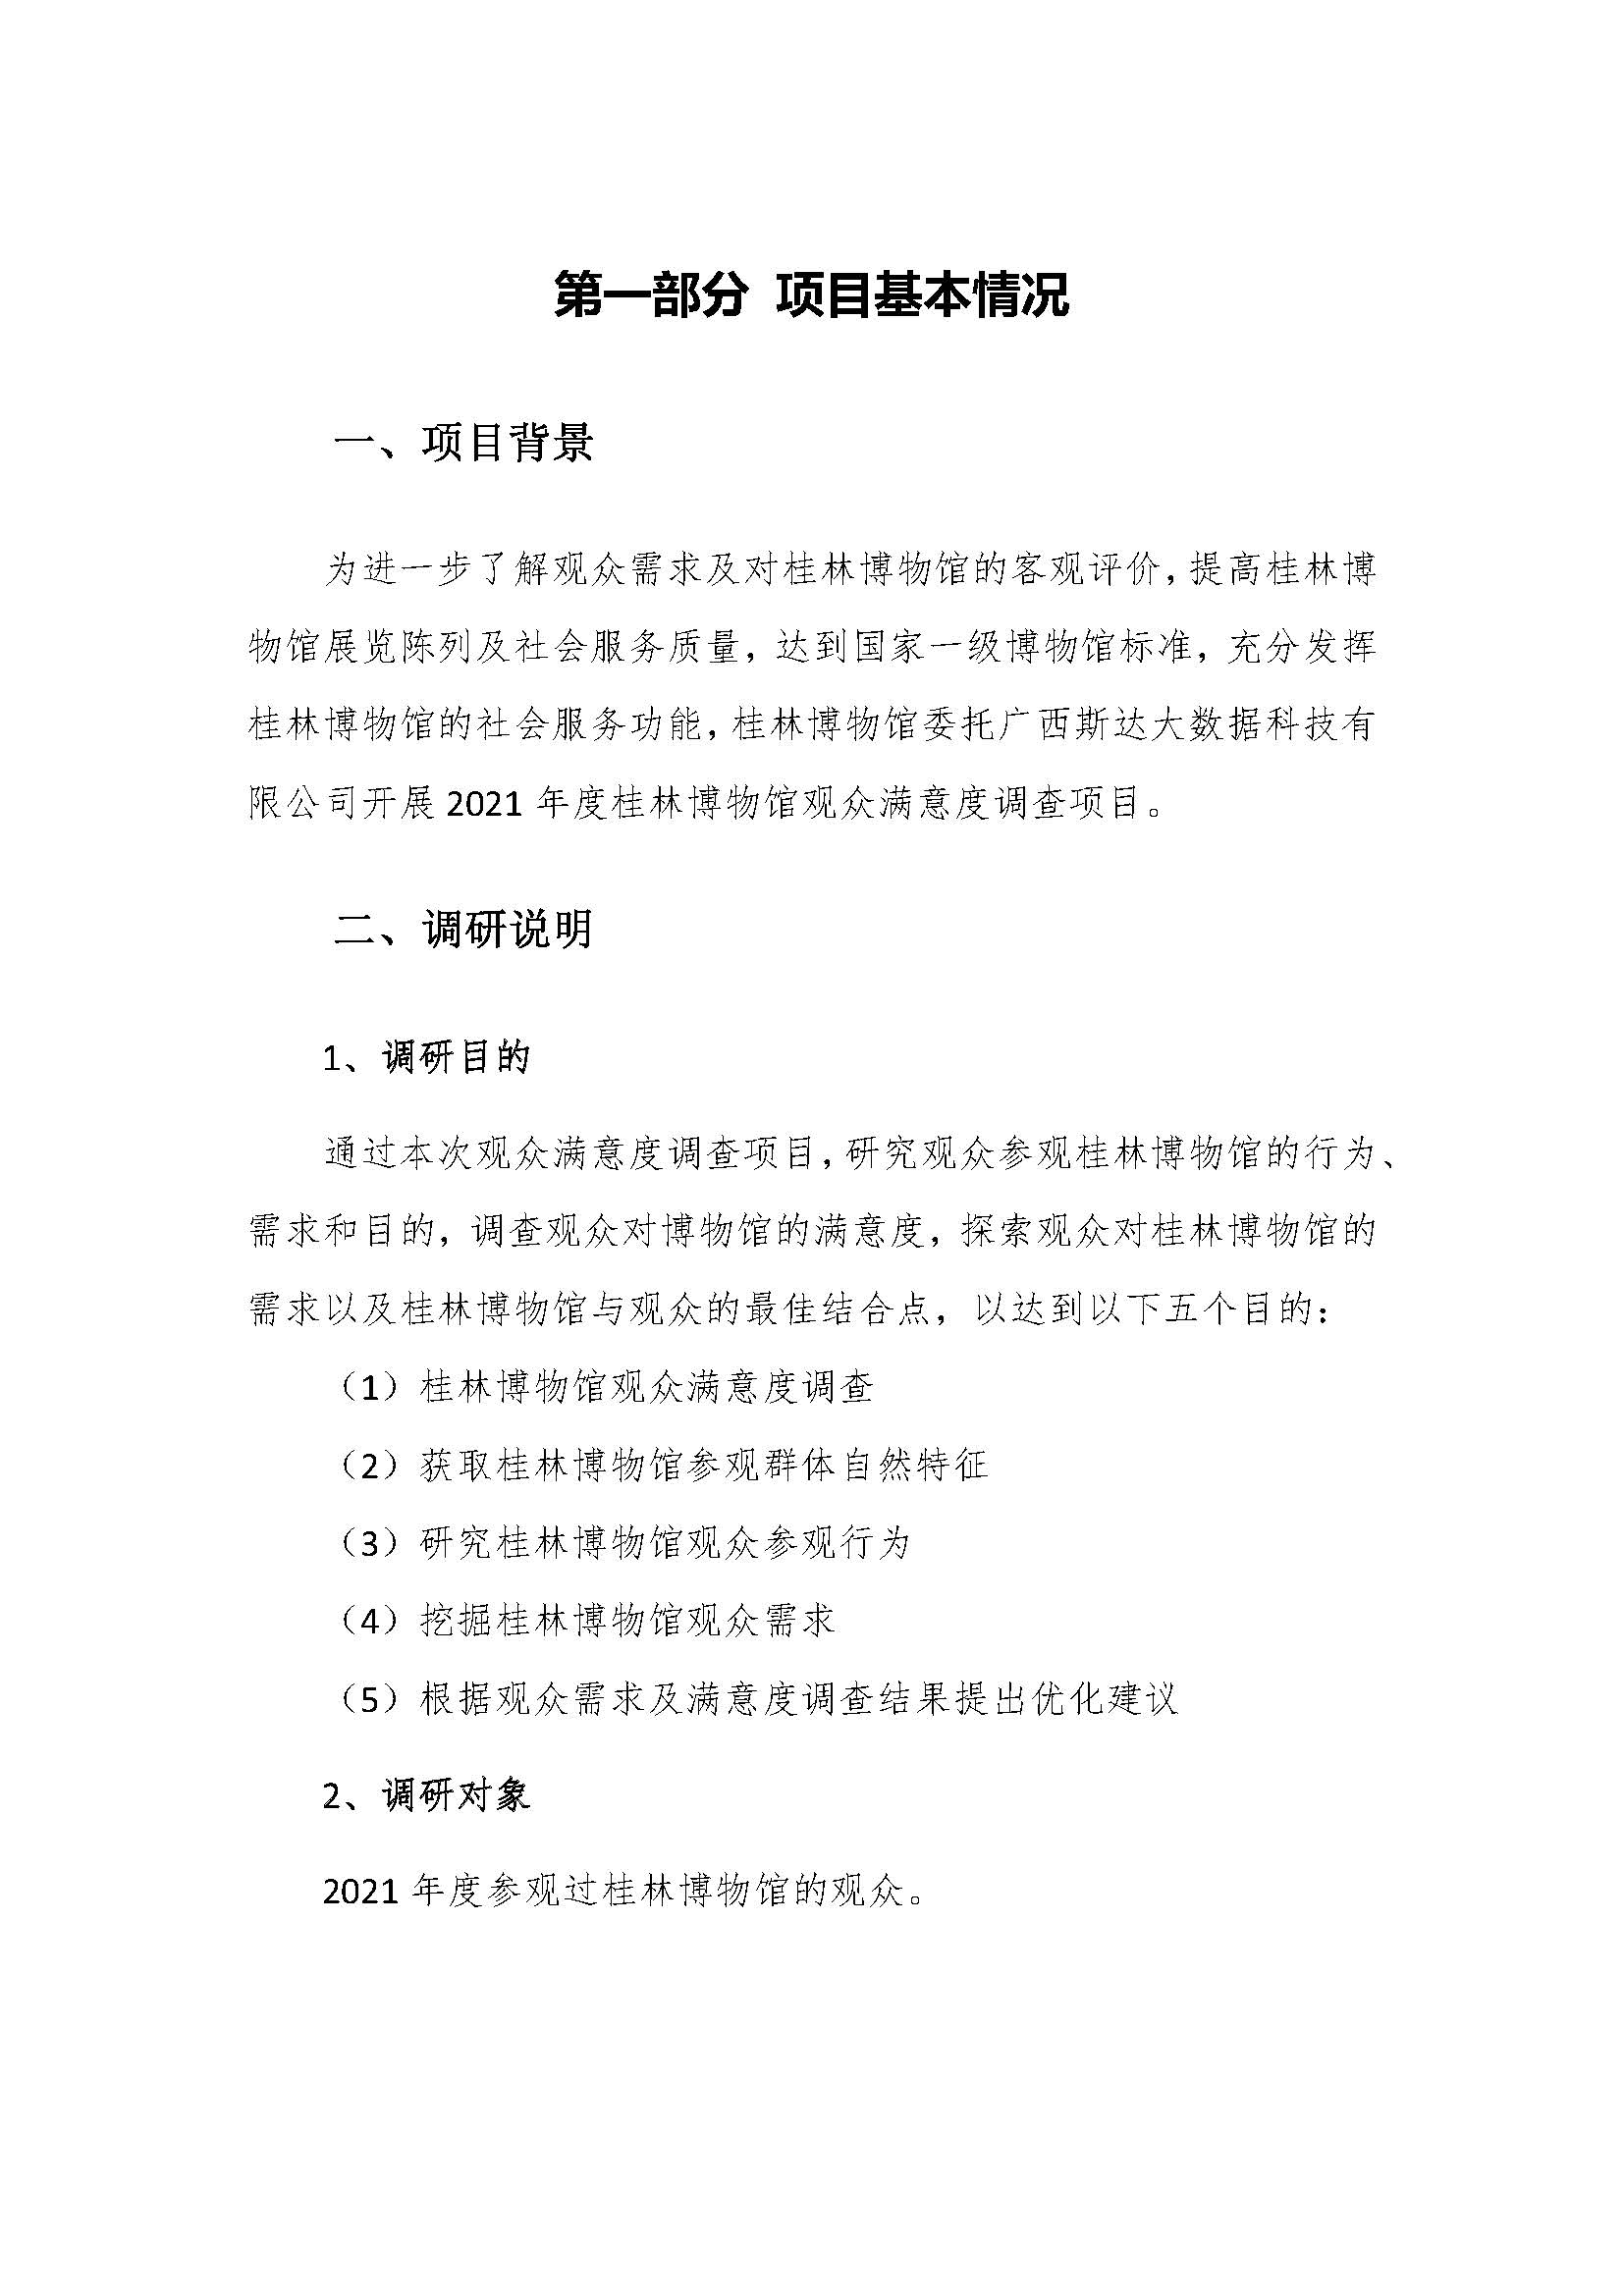 2021年桂林博物馆参观观众满意度调查报告_v3_页面_04.jpg